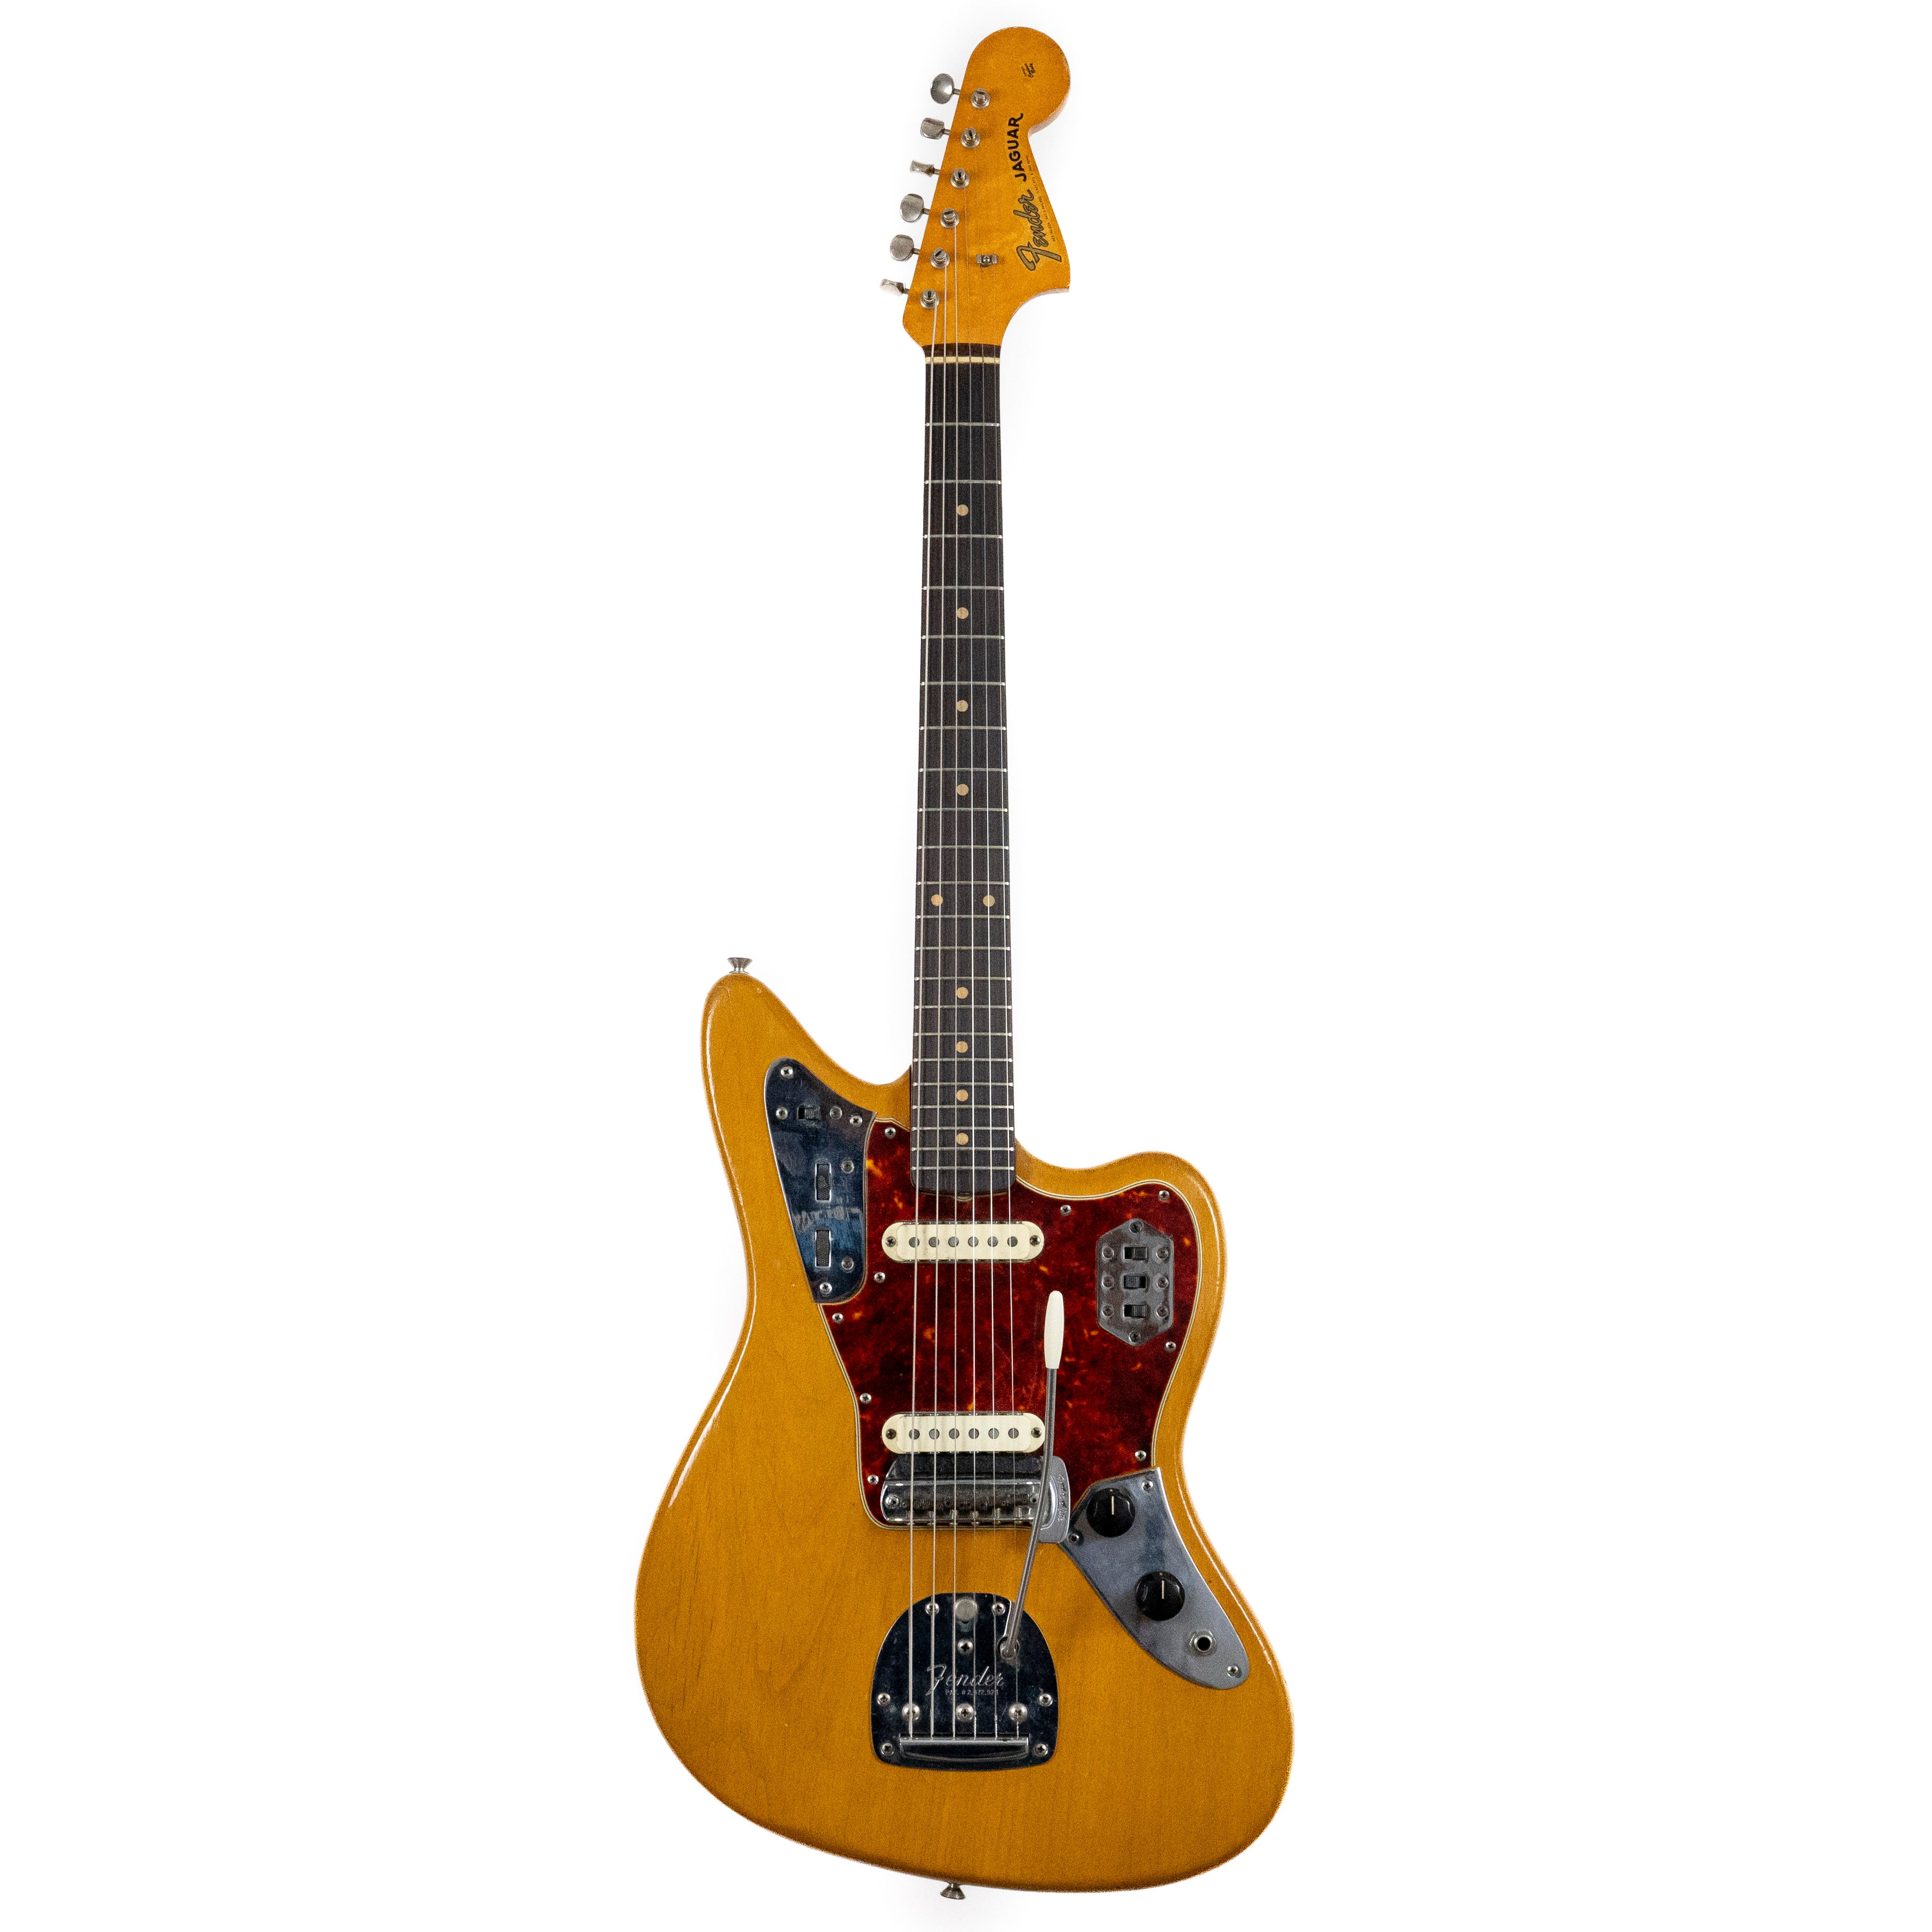 Fender 1962 Jaguar Refinished Natural (Slab Board)